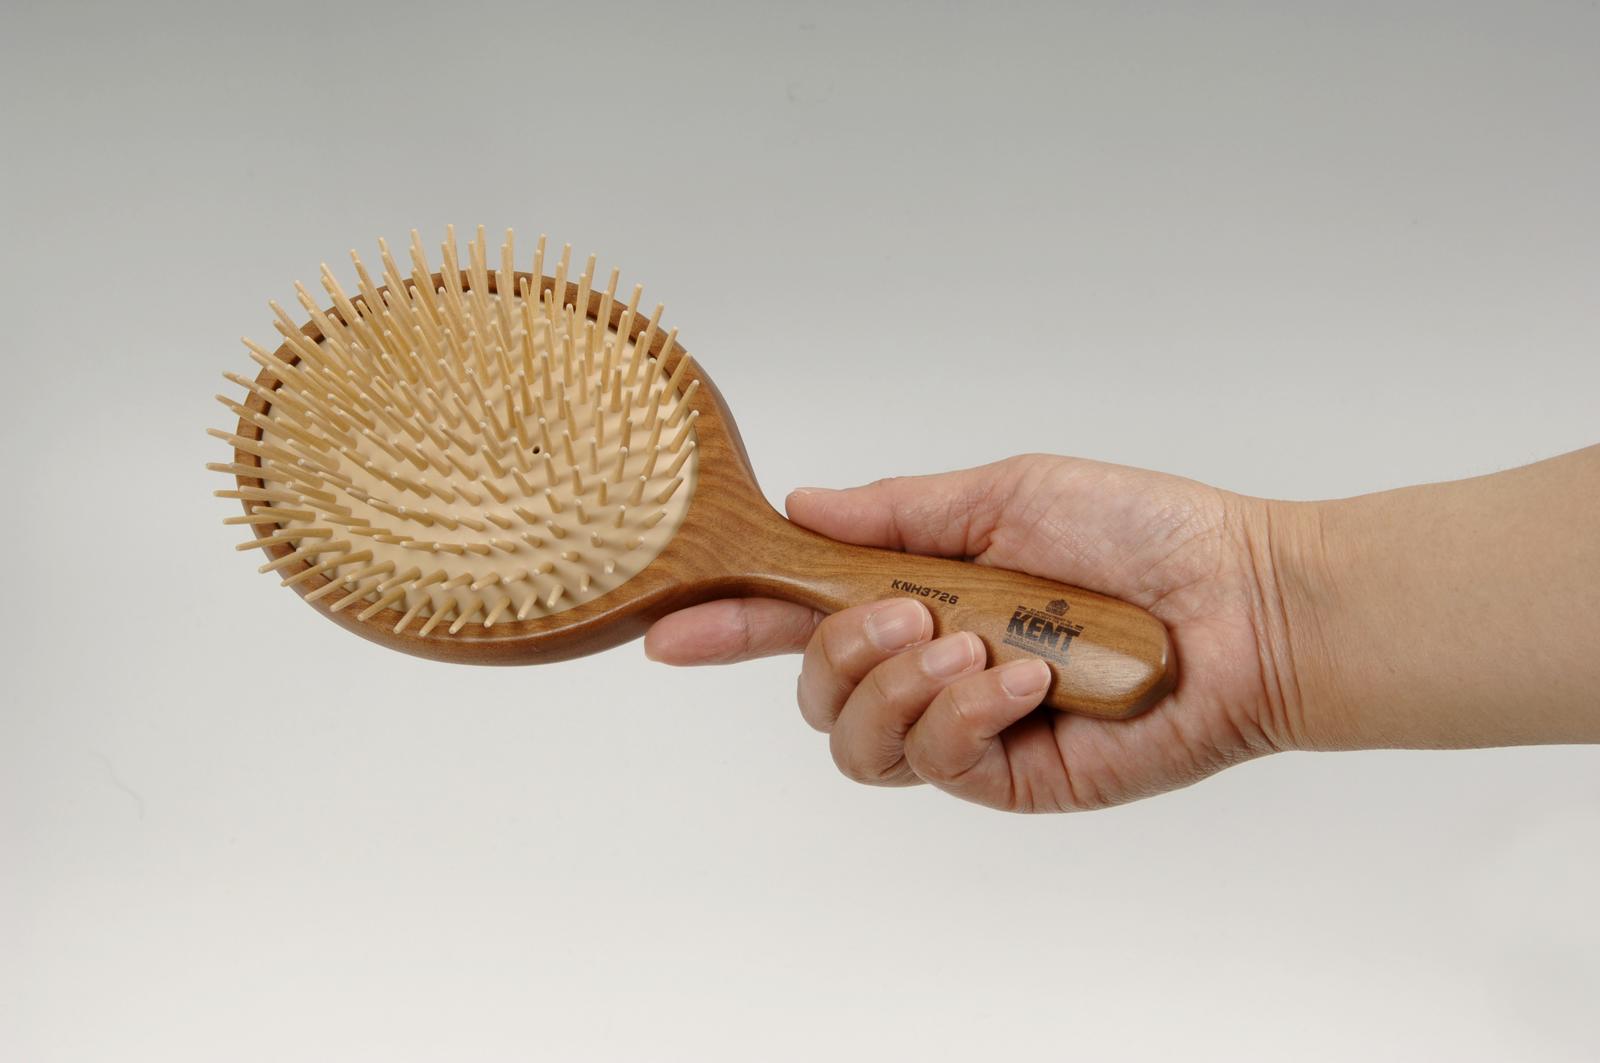 ヘアーブラシ ケント KENT 静電気がおきにくいウッドピンクッションブラシ KNH-3726a Hair brush [優れものA]